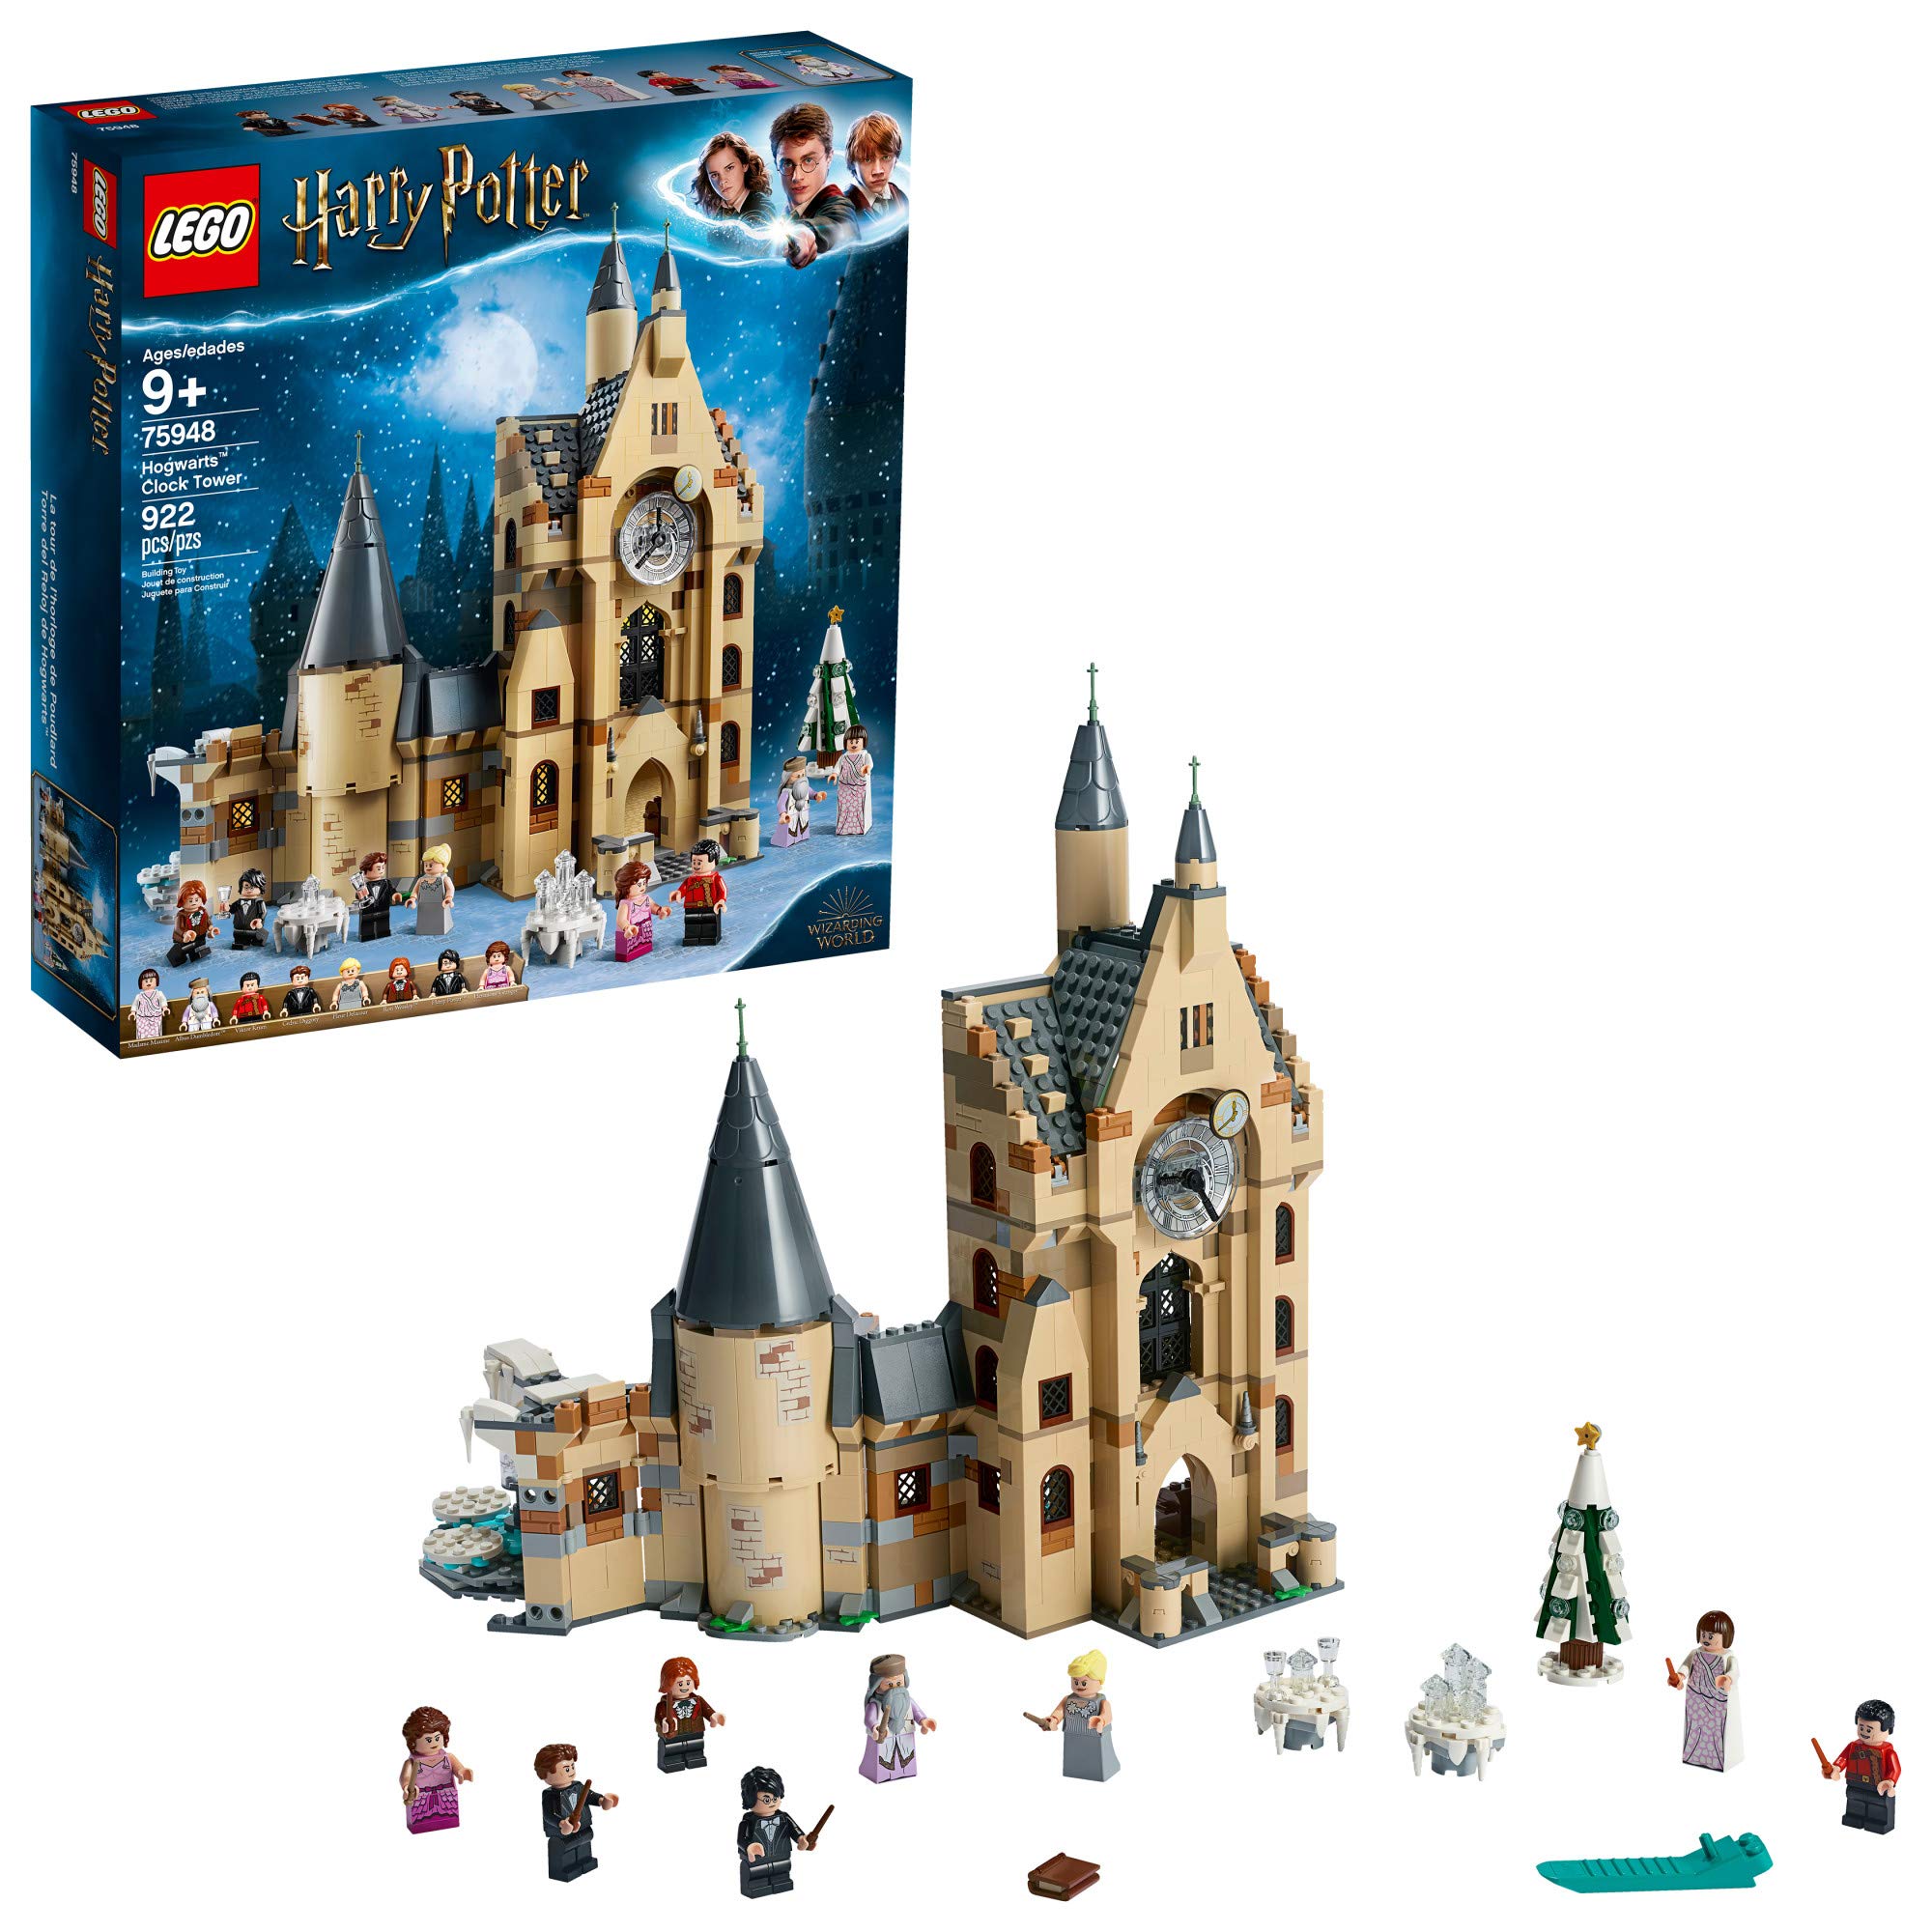 LEGO ハリー・ポッター ホグワーツ時計塔 75948 ハリー・ポッターのミニフィギュア付き組み立てて遊ぶタ...